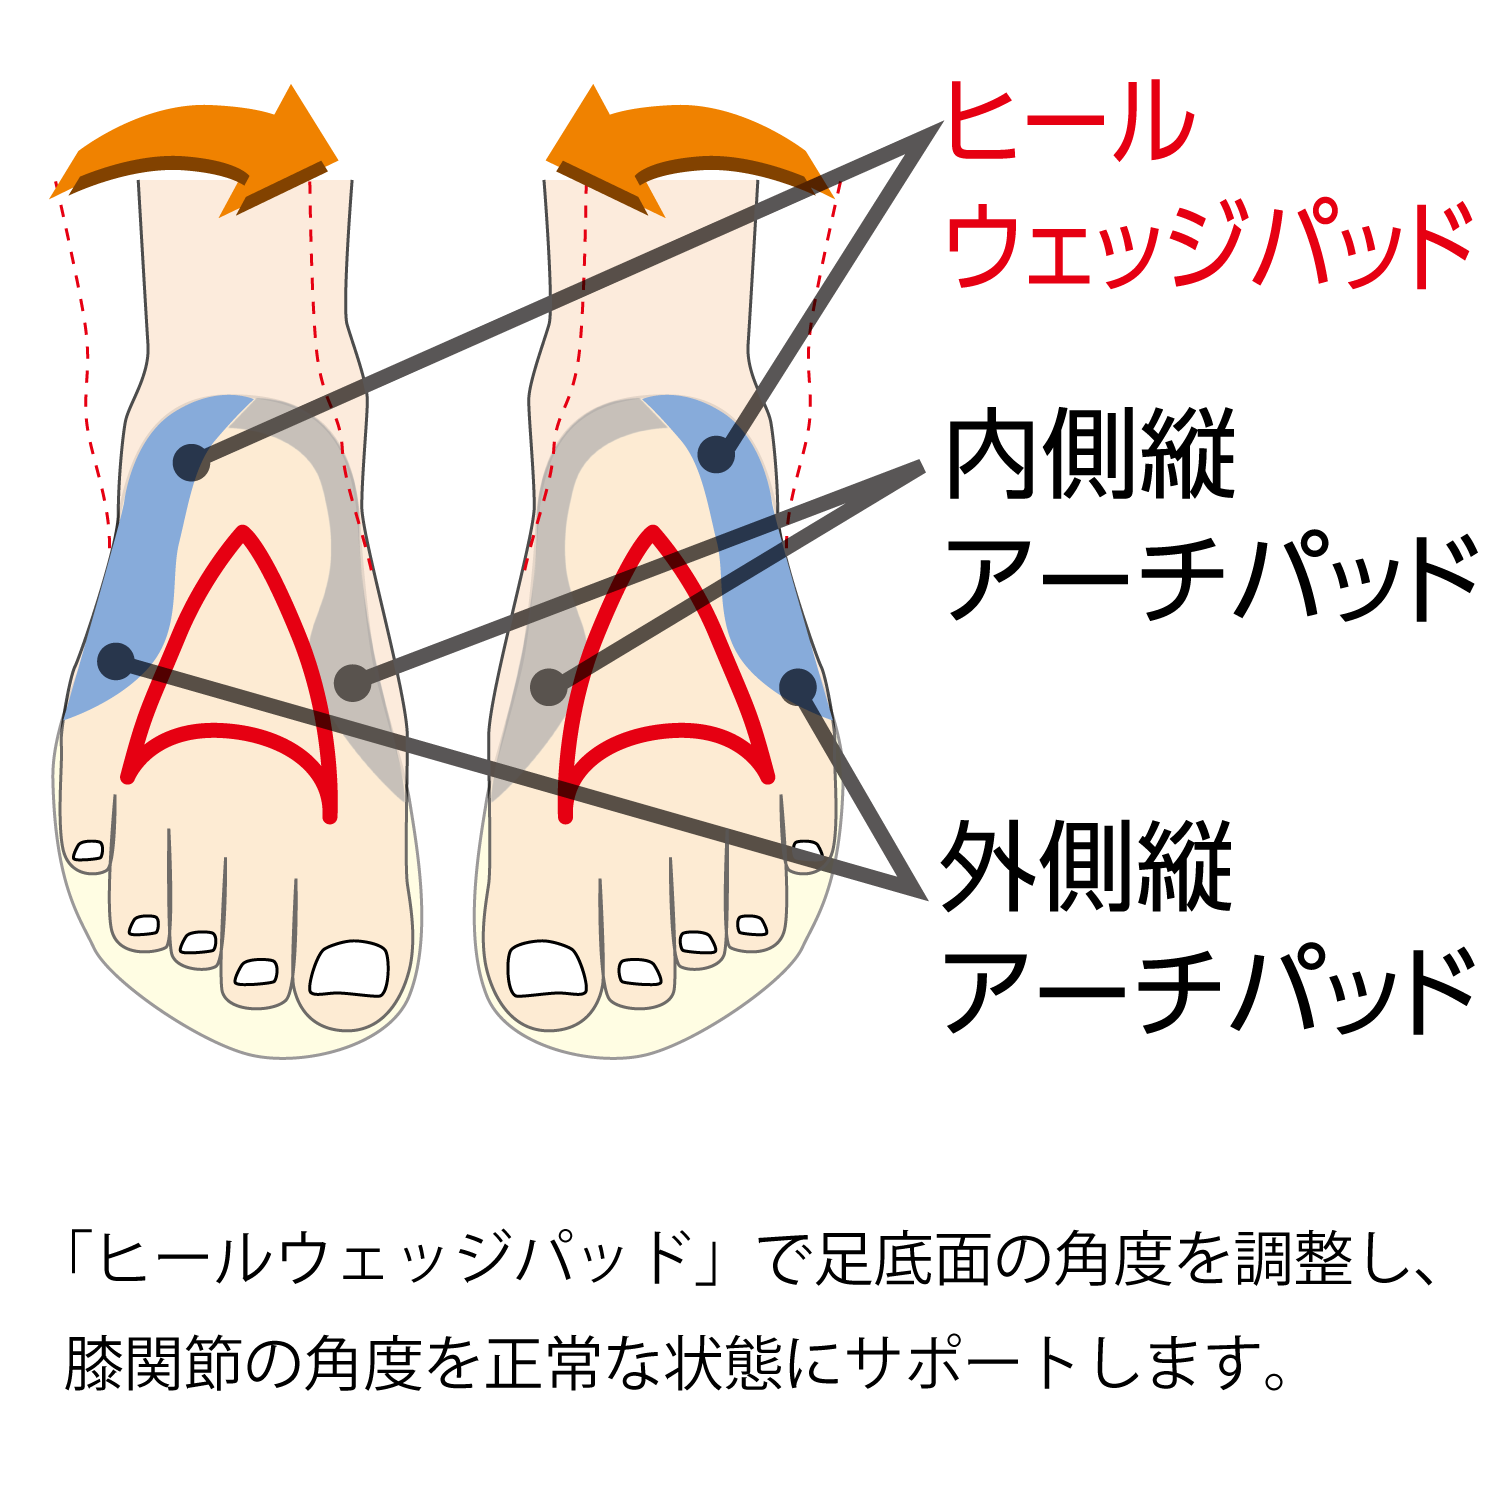 インソールプロO脚対策は「ヒールウェッジパッド」で足底面の角度を調整し、膝関節の角度を正常な状態にサポートします